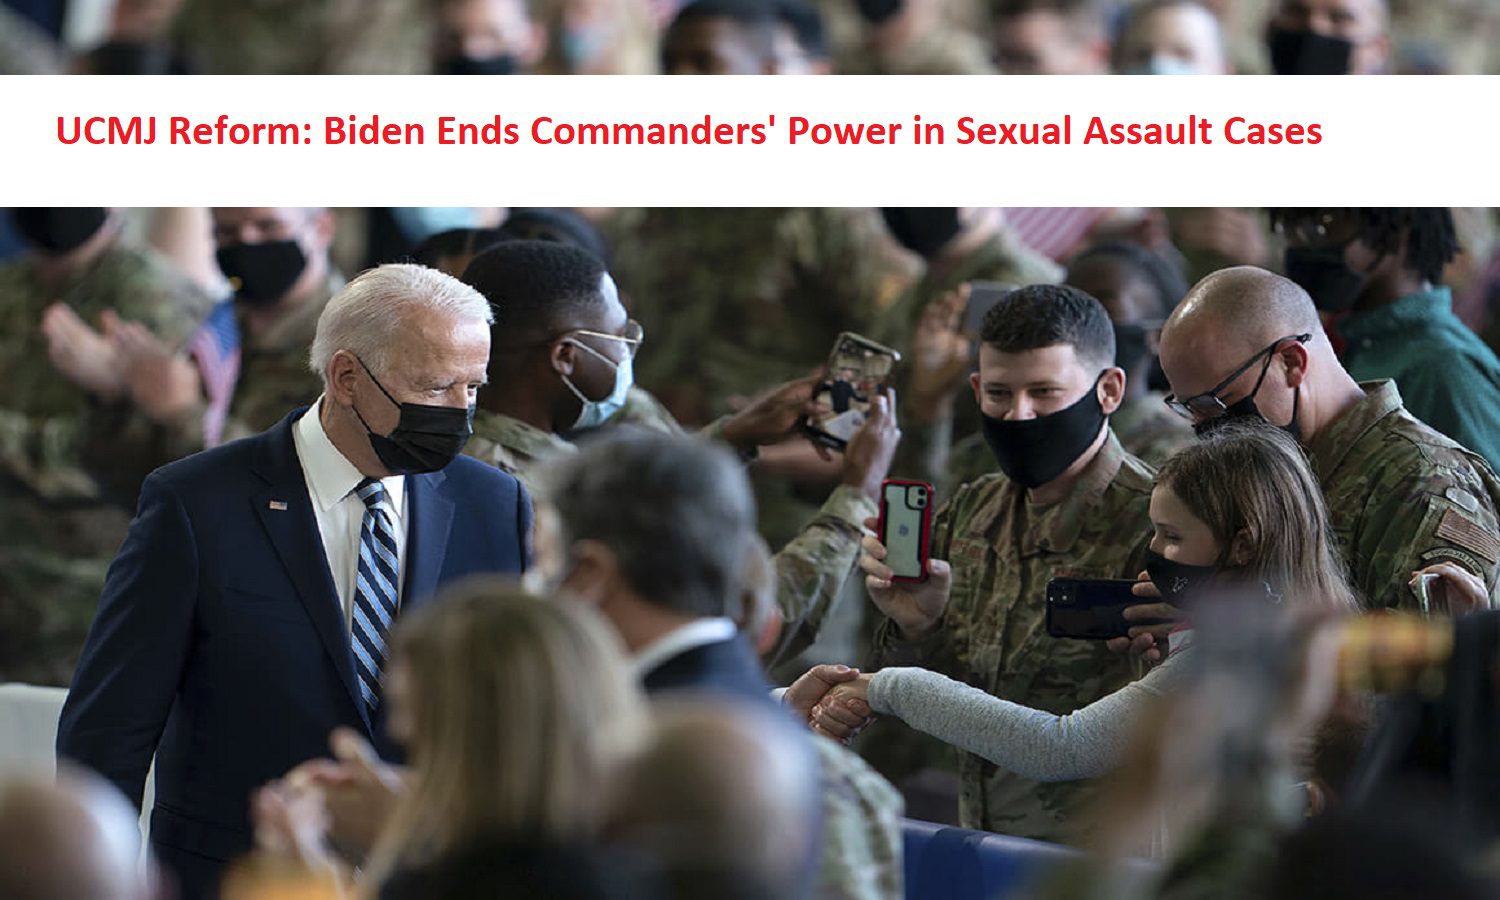 UCMJ Reform: Biden Ends Commanders' Power in Sexual Assault Cases